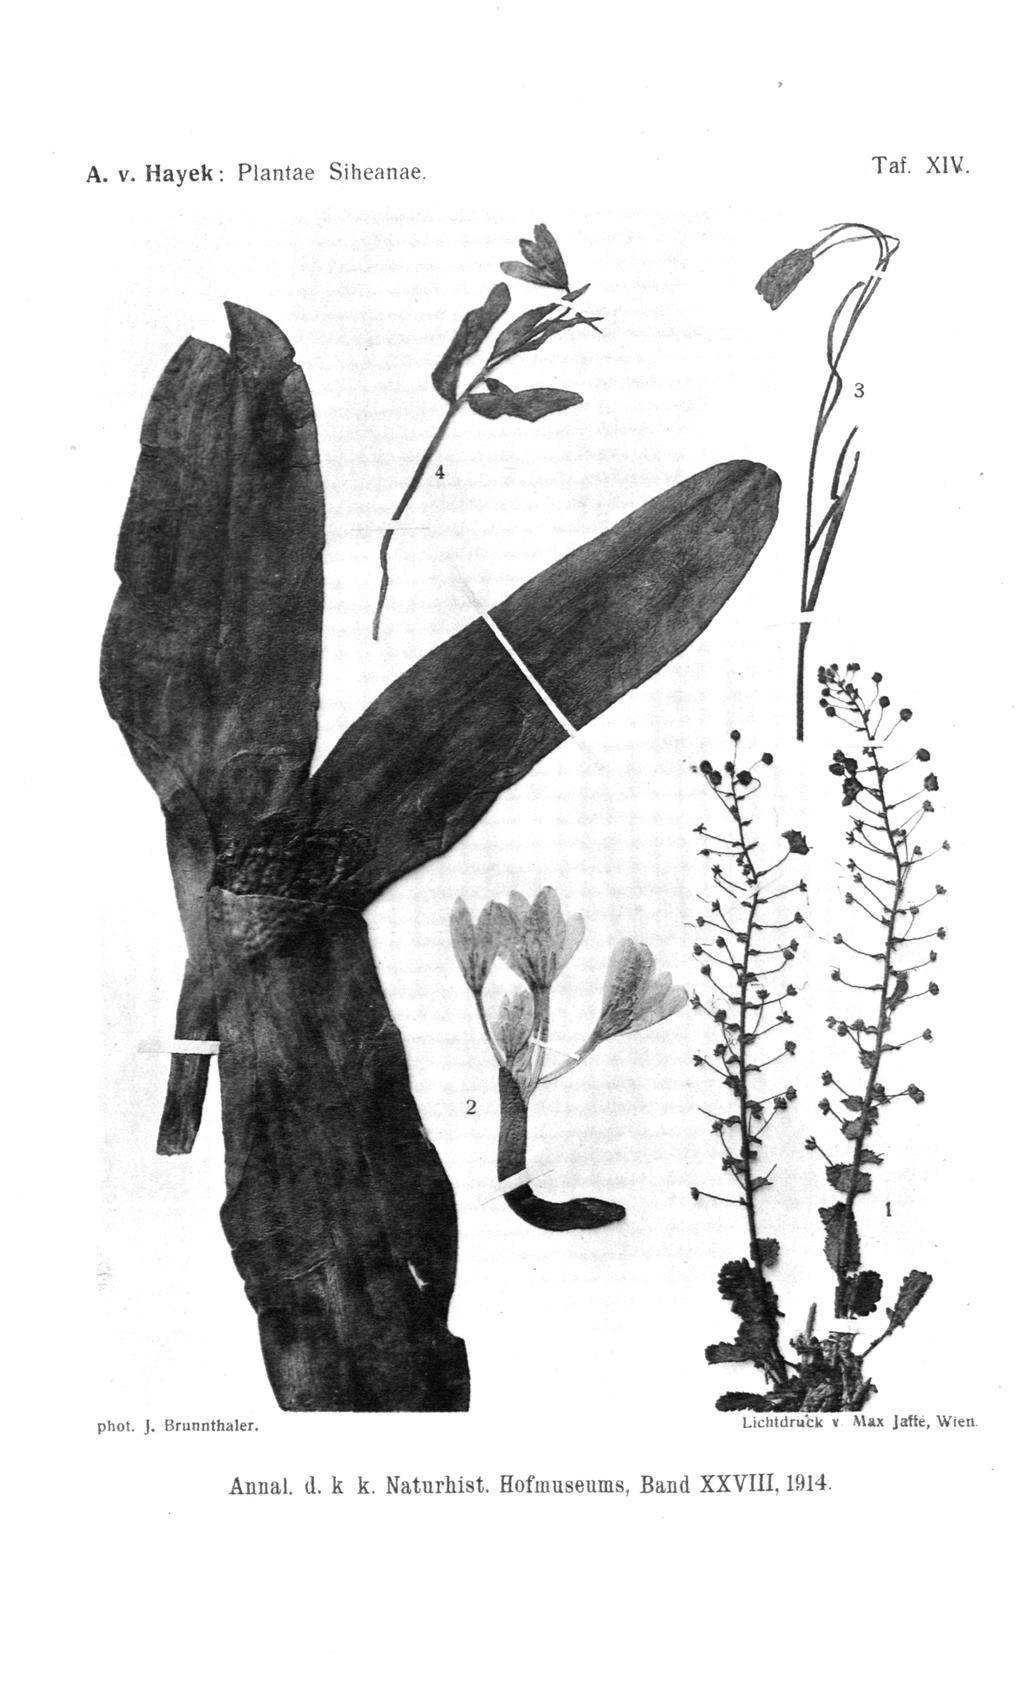 Taf. XIV. A. v. Hayek: Plantae Siheanae. phot. J. Brunnthaler.